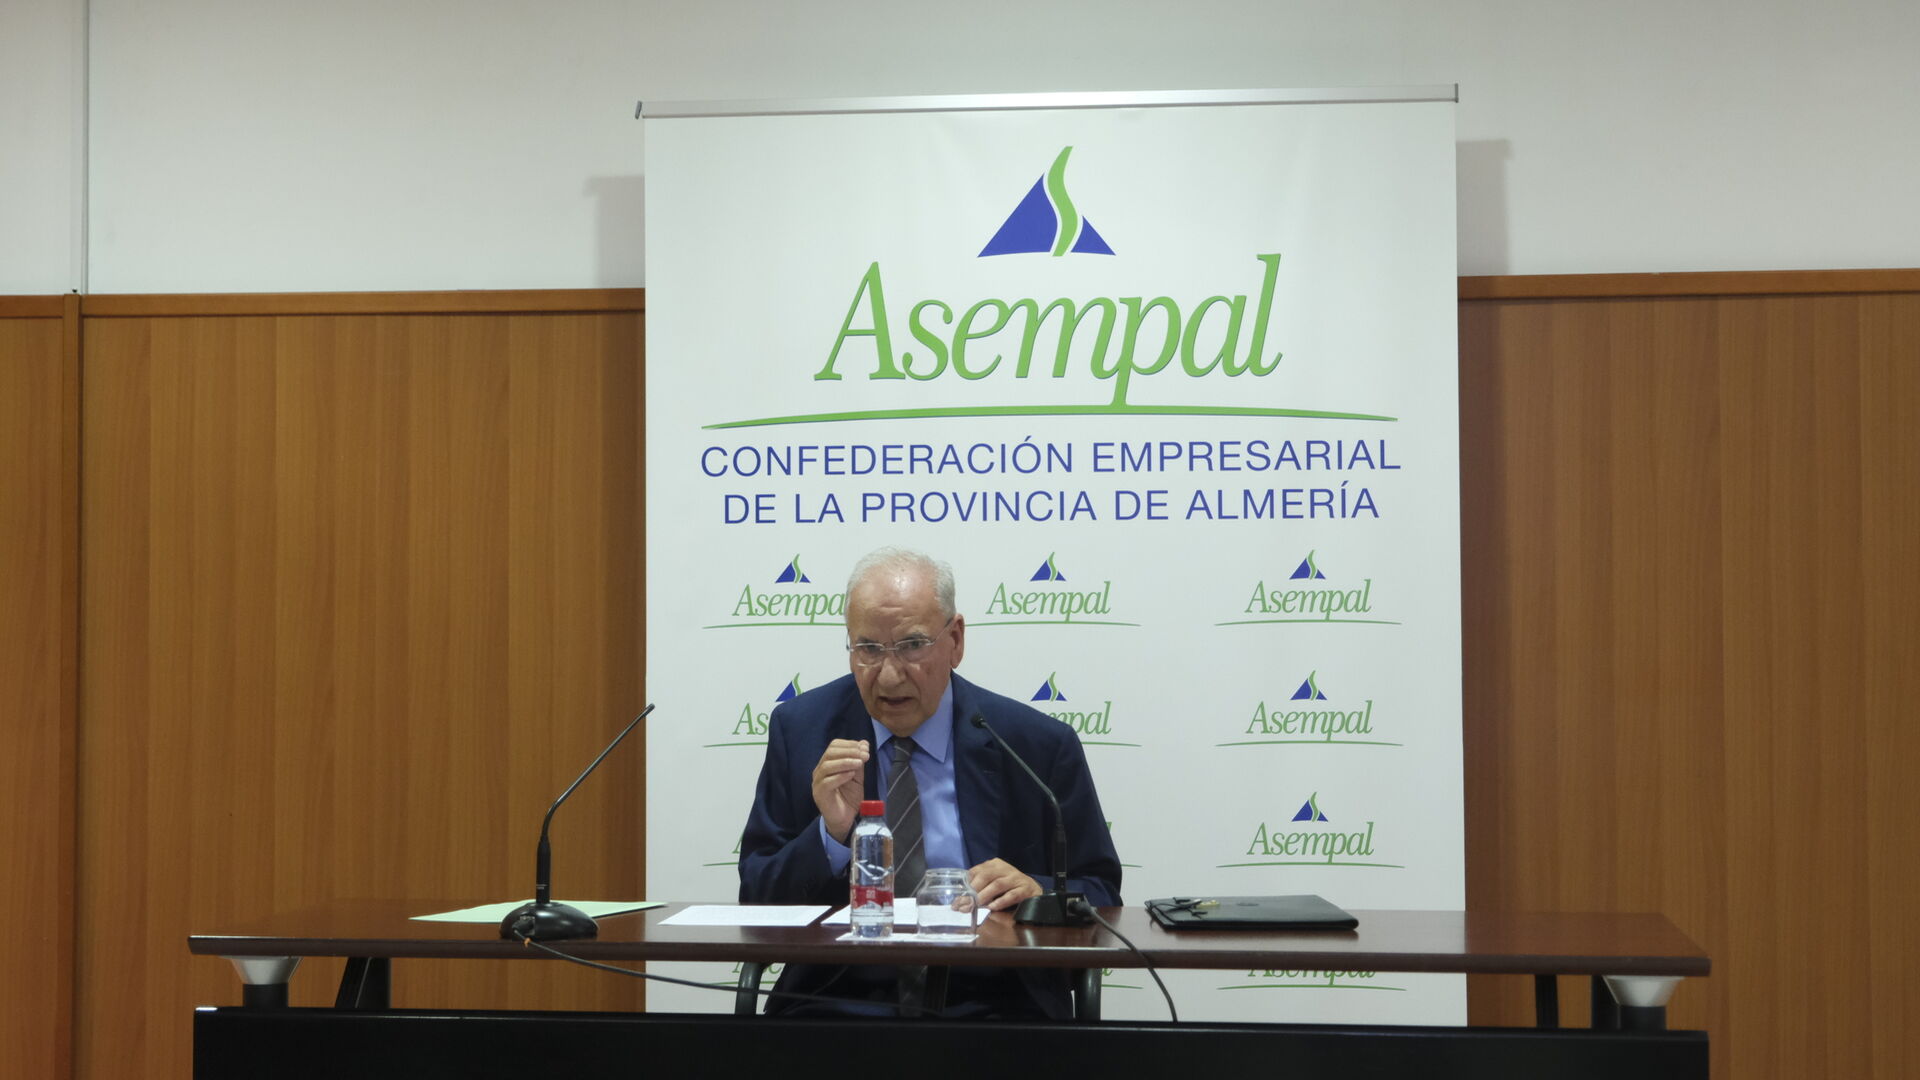 Im&aacute;genes de la conferencia de Alfonso Guerra en el Foro Empresarial de Asempal, en Almer&iacute;a